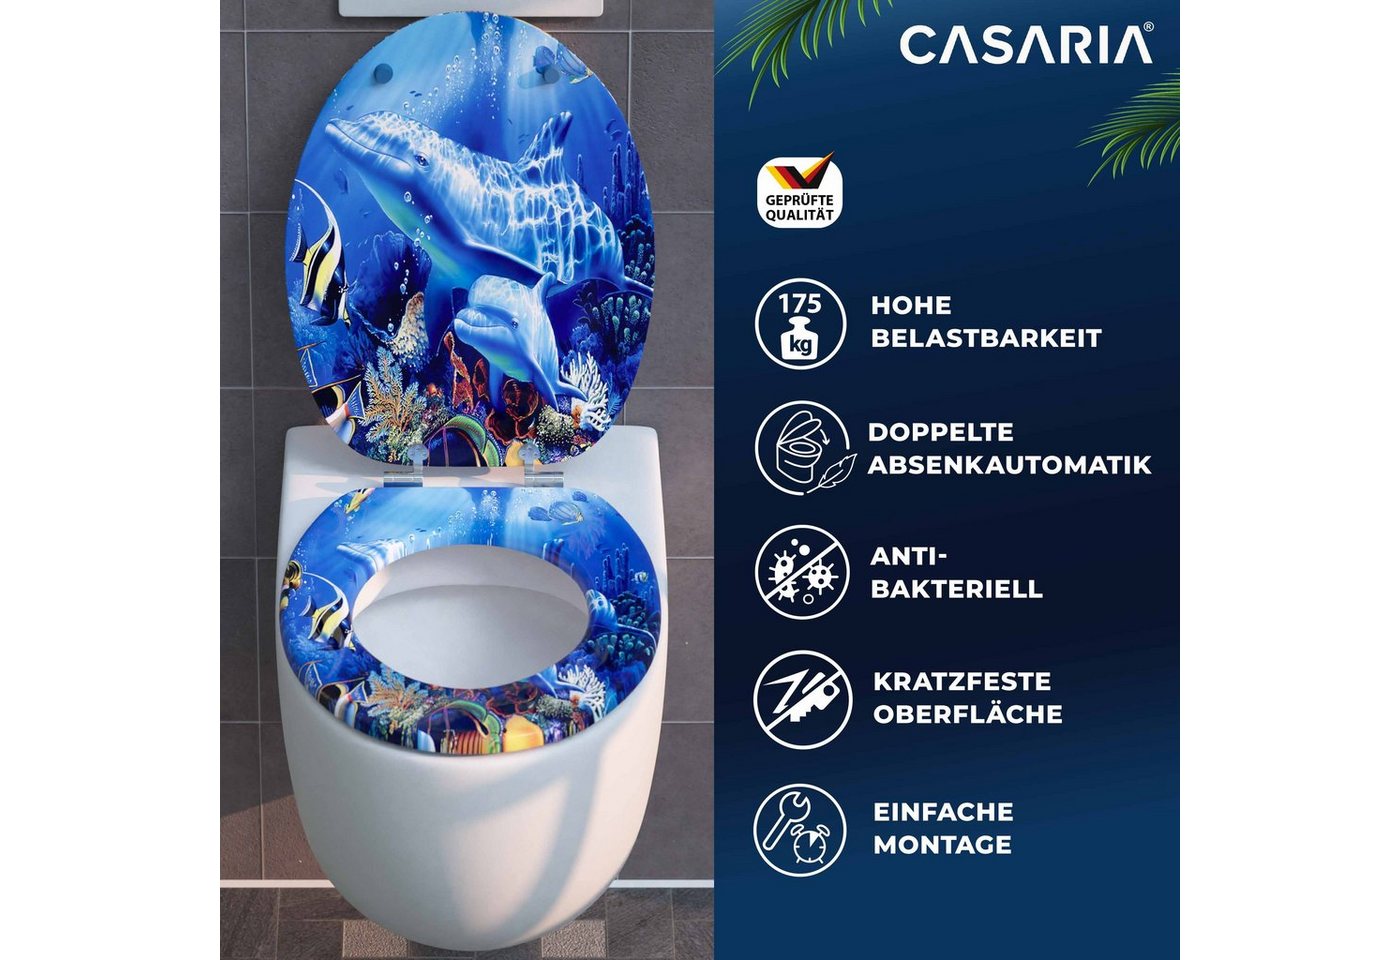 Casaria WC-Sitz, Doppelte Absenkautomatik MDF Holz hygienisch Toilettensitz Klobrille von Casaria